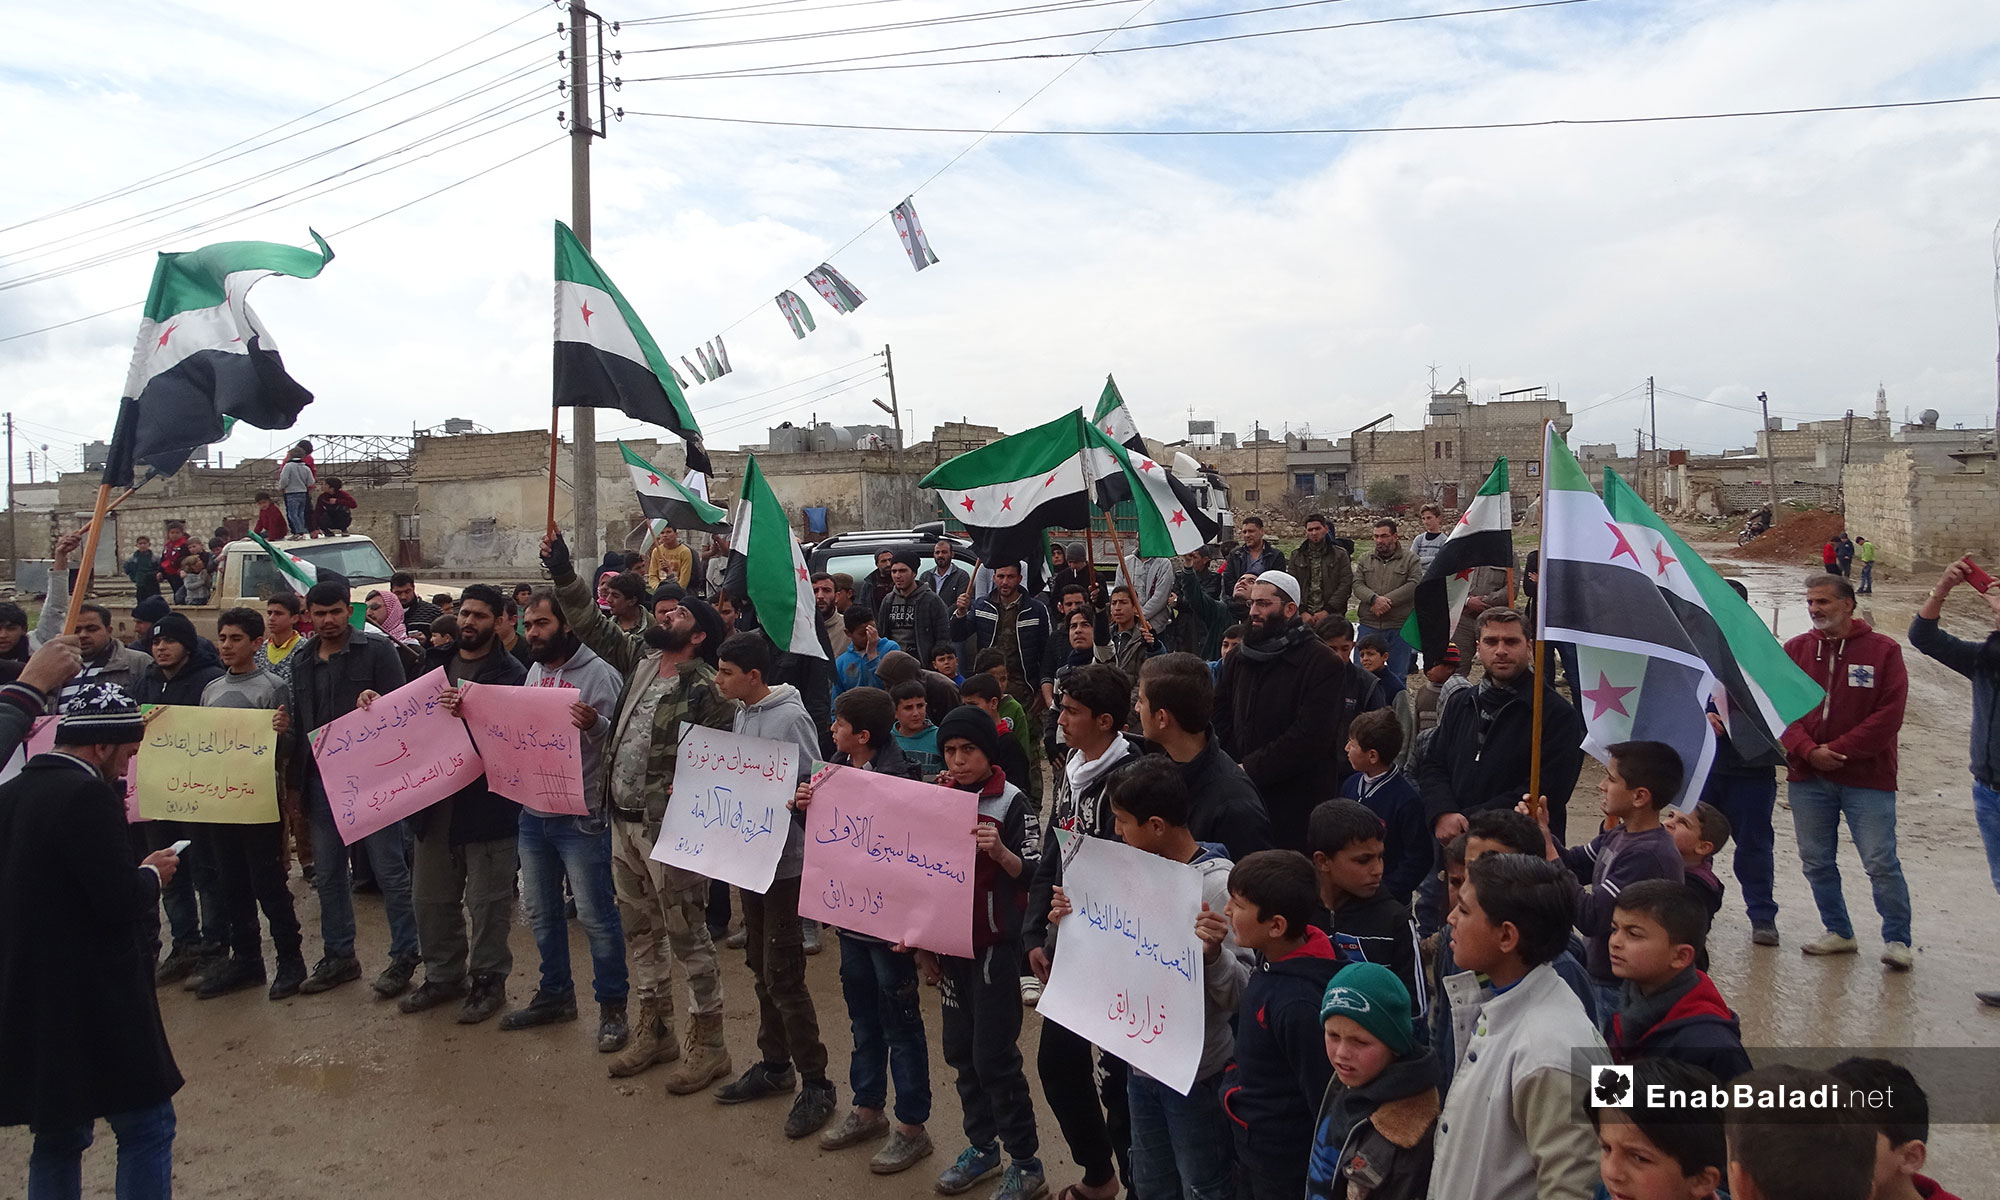 في الذكرى الثامنة للثورة السورية مظاهرة في بلدة دابق بريف حلب الشمالي - 15 من آذار 2019 (عنب بلدي)